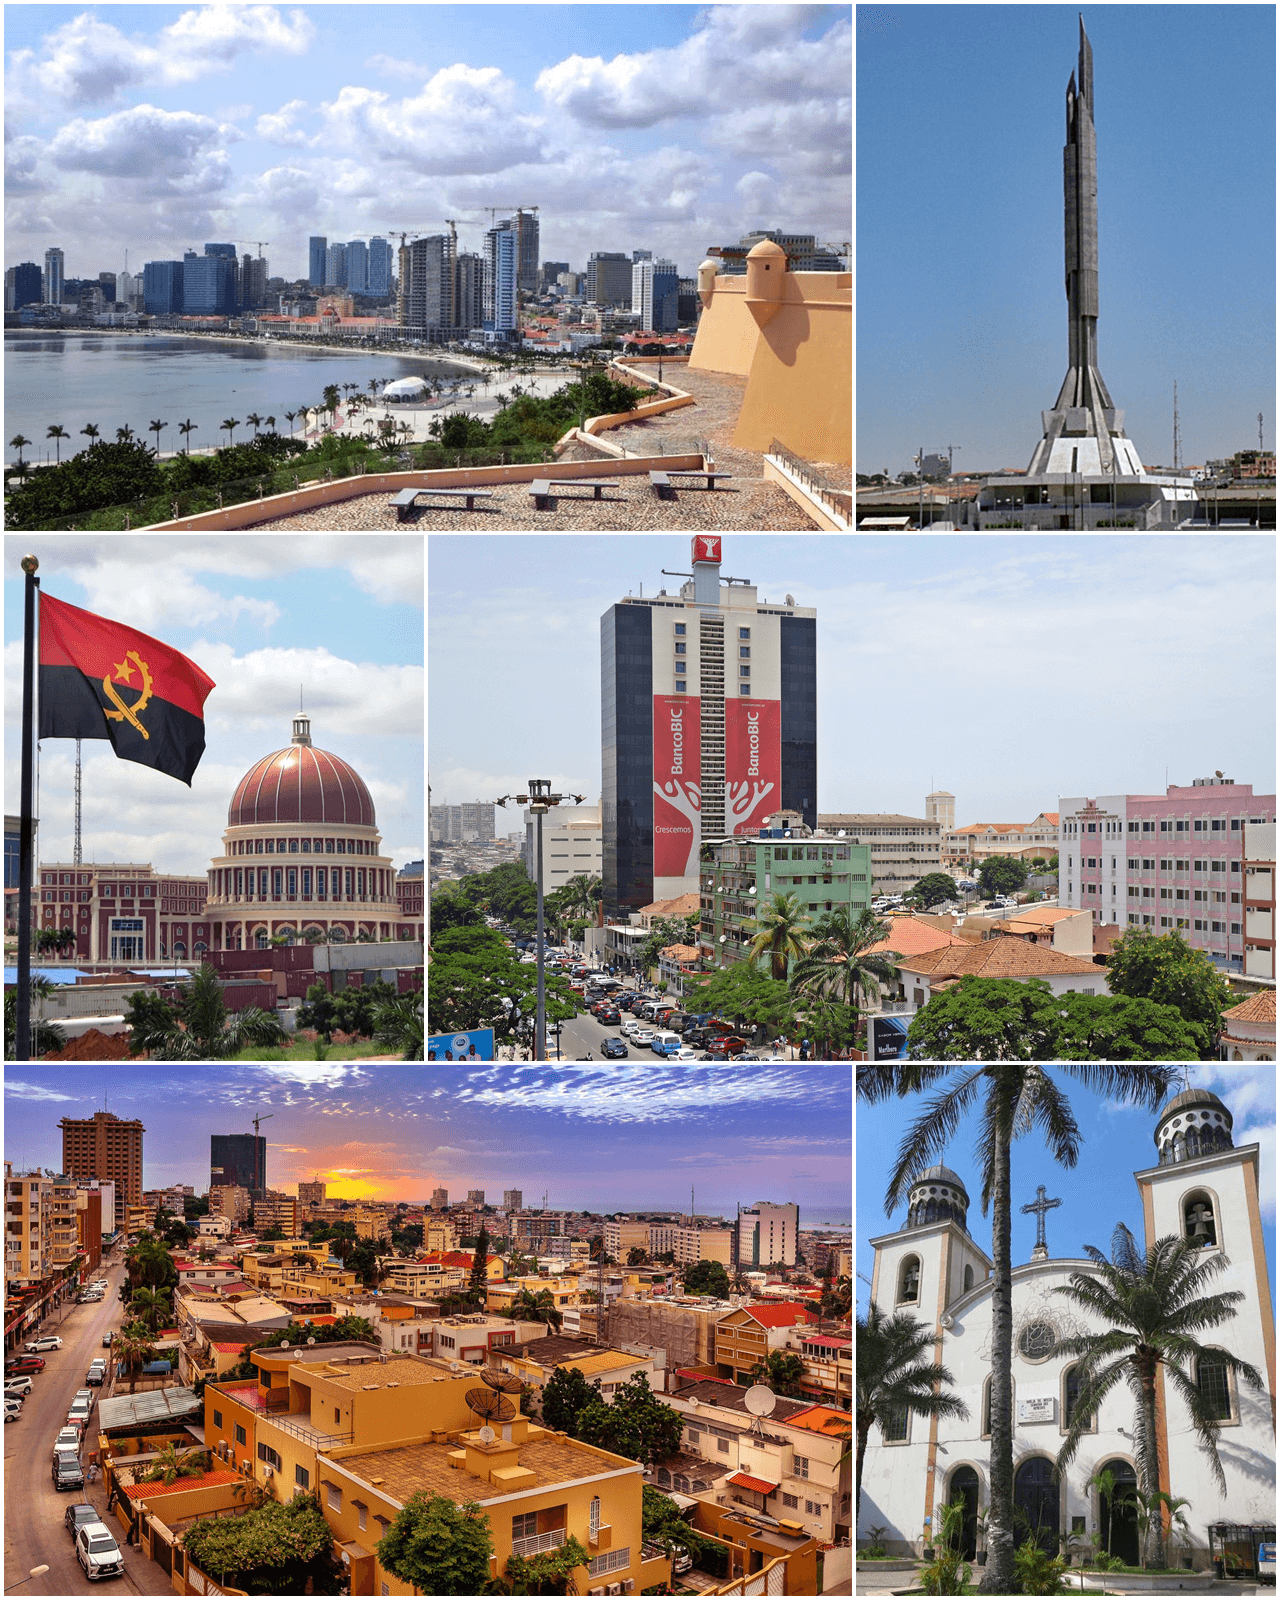 Likizo ya Ufukweni ya Luanda Angola